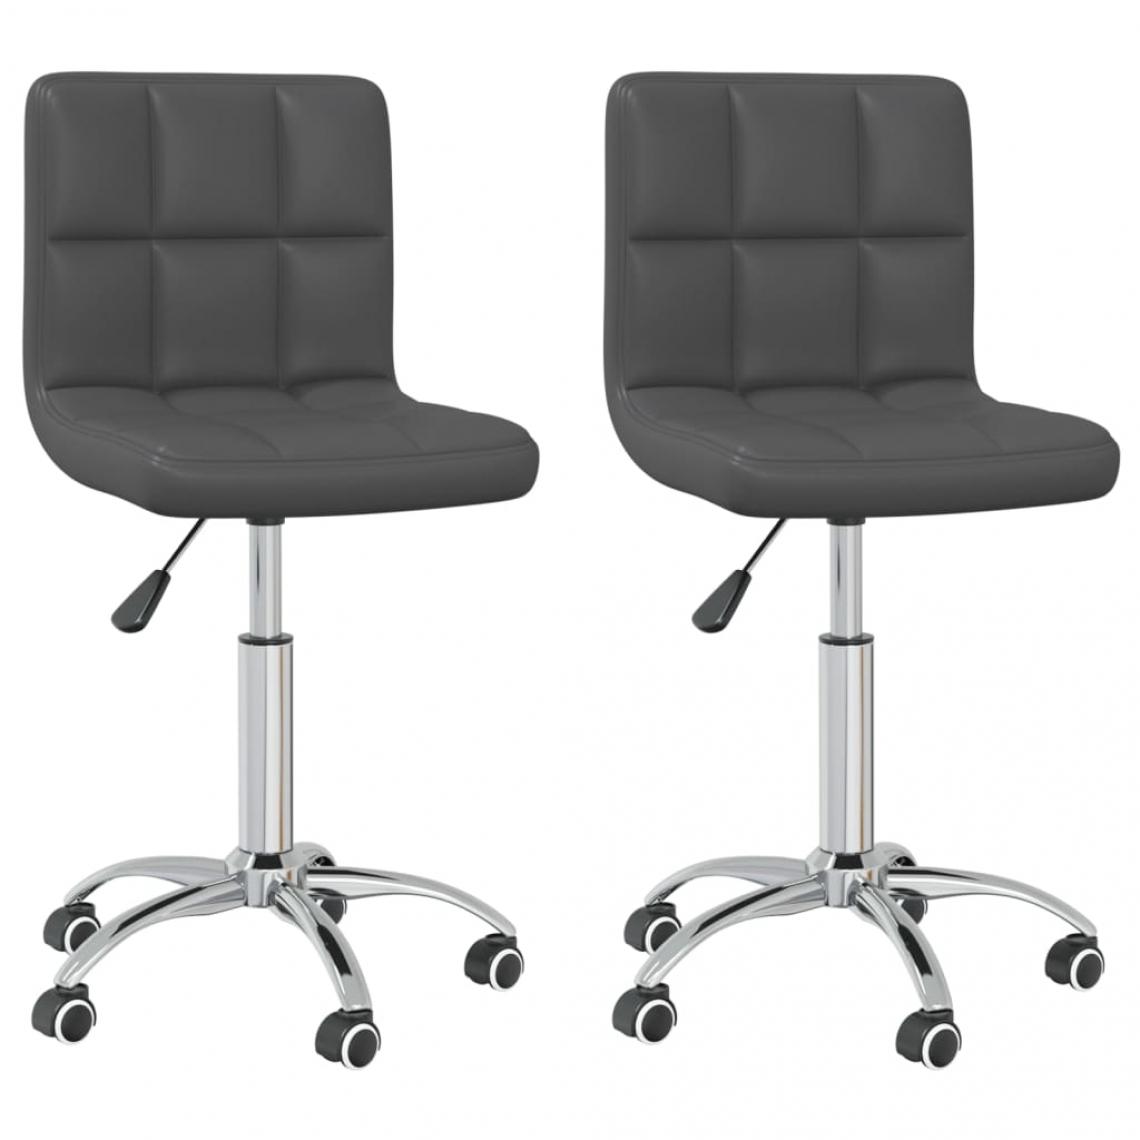 Decoshop26 - Lot de 2 chaises de salle à manger cuisine pivotantes design moderne similicuir gris CDS020914 - Chaises